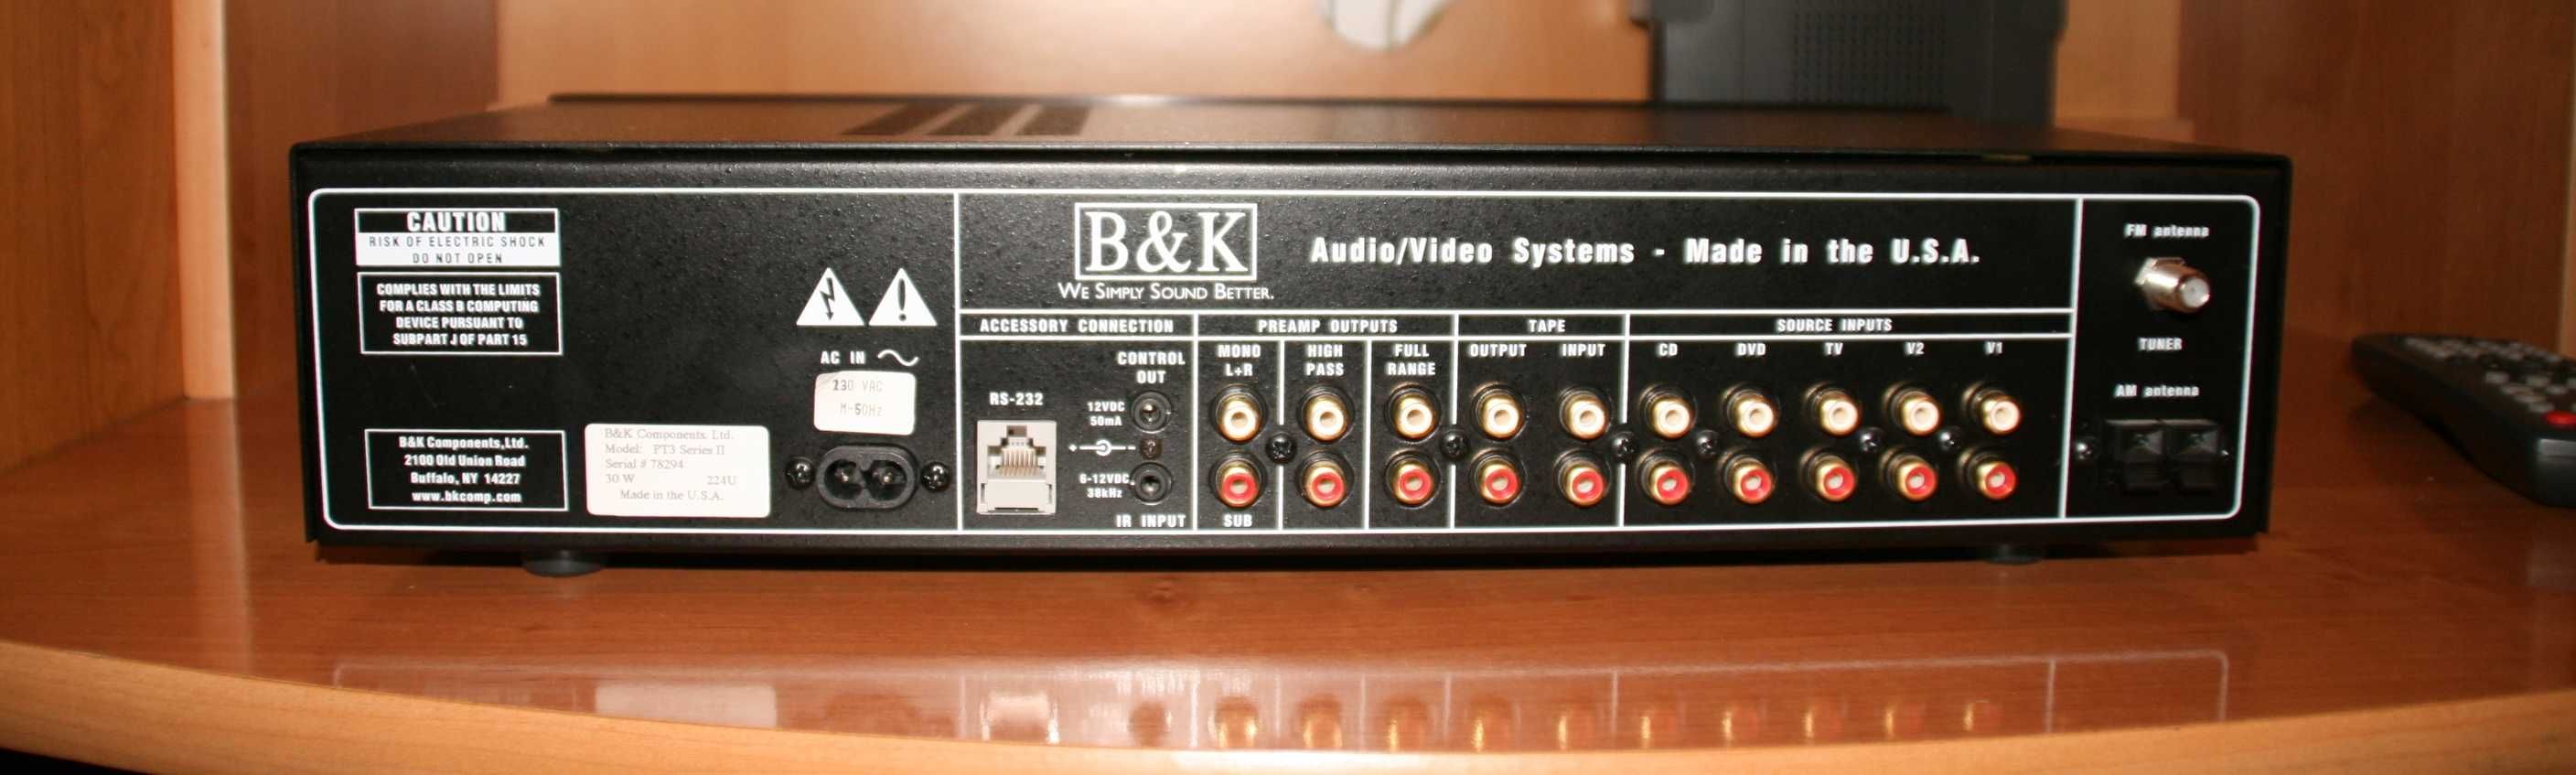 Wzmacniacz i przedwzmacniacz stereo | B&K Components | Made in USA